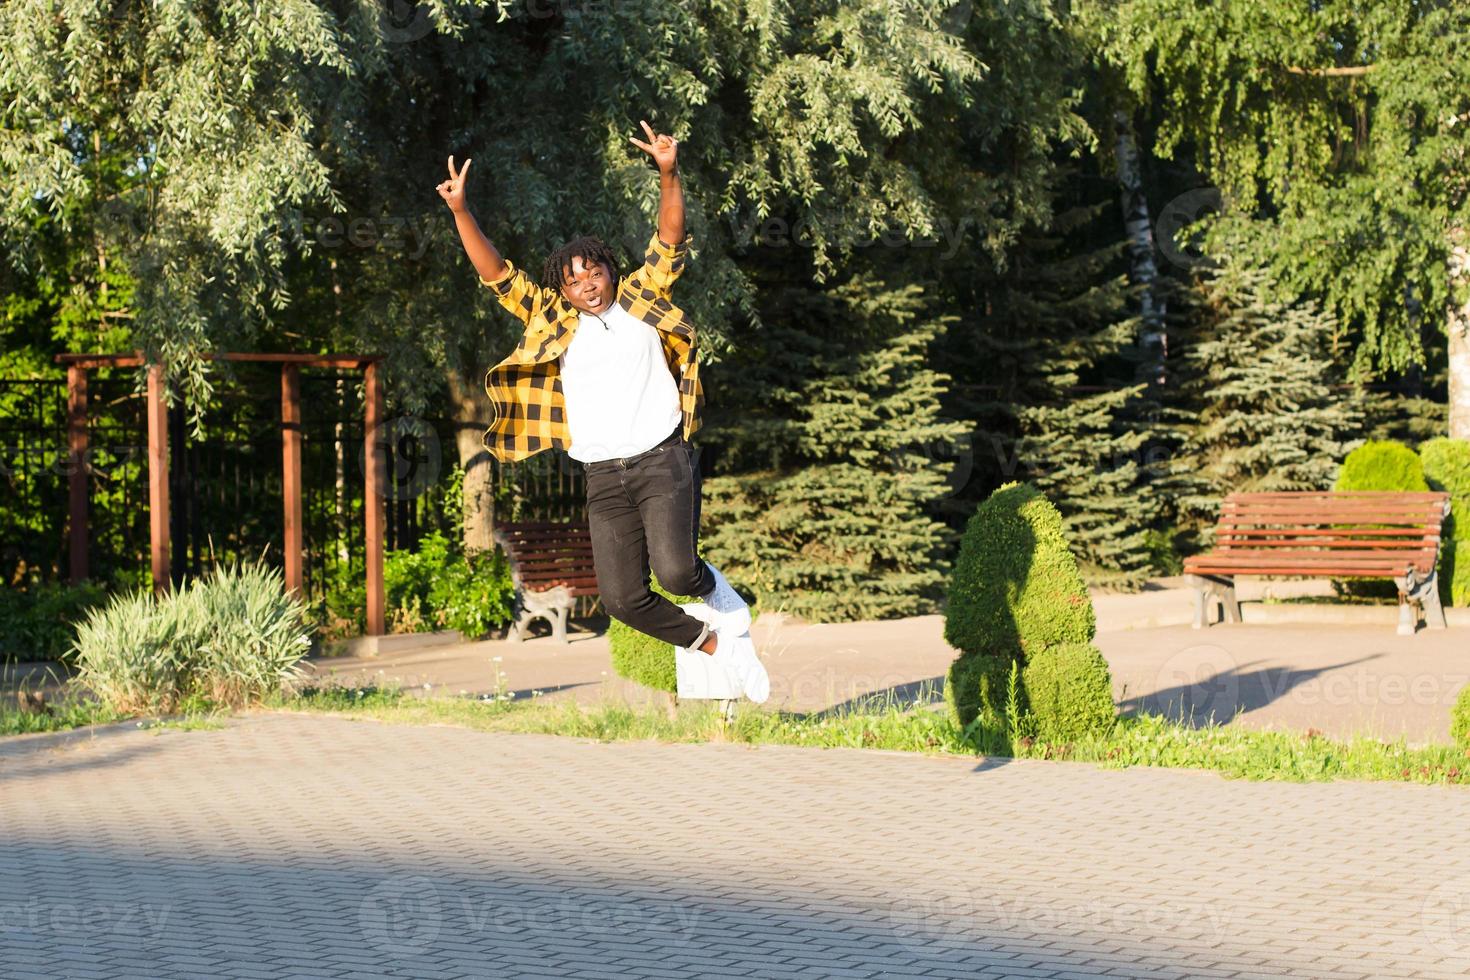 une femme afro-américaine heureuse dans le parc fait un saut en été photo